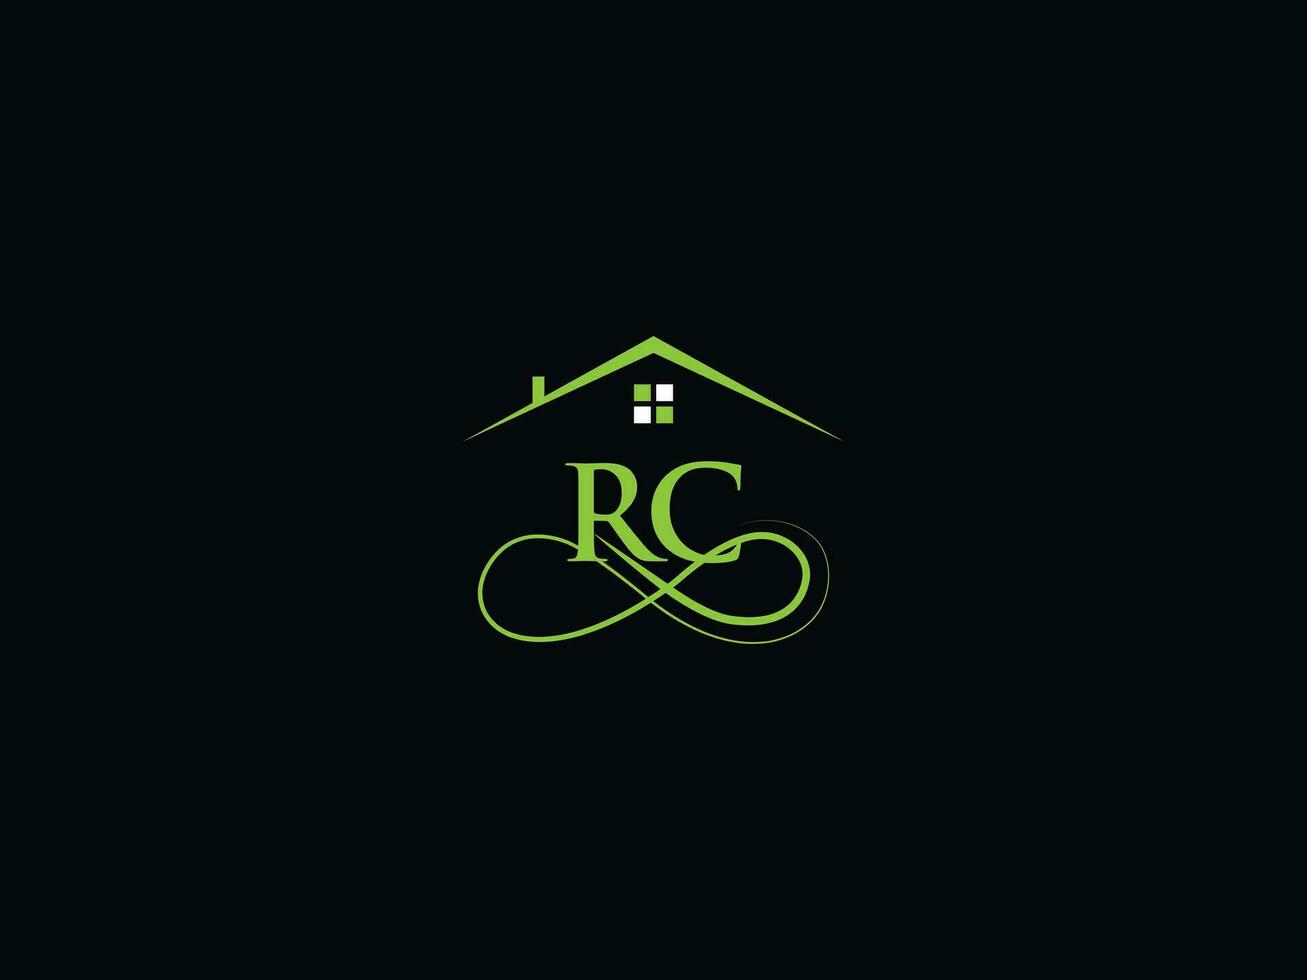 lyx byggnad rc logotyp ikon vektor, minimalistisk rc verklig egendom logotyp design vektor